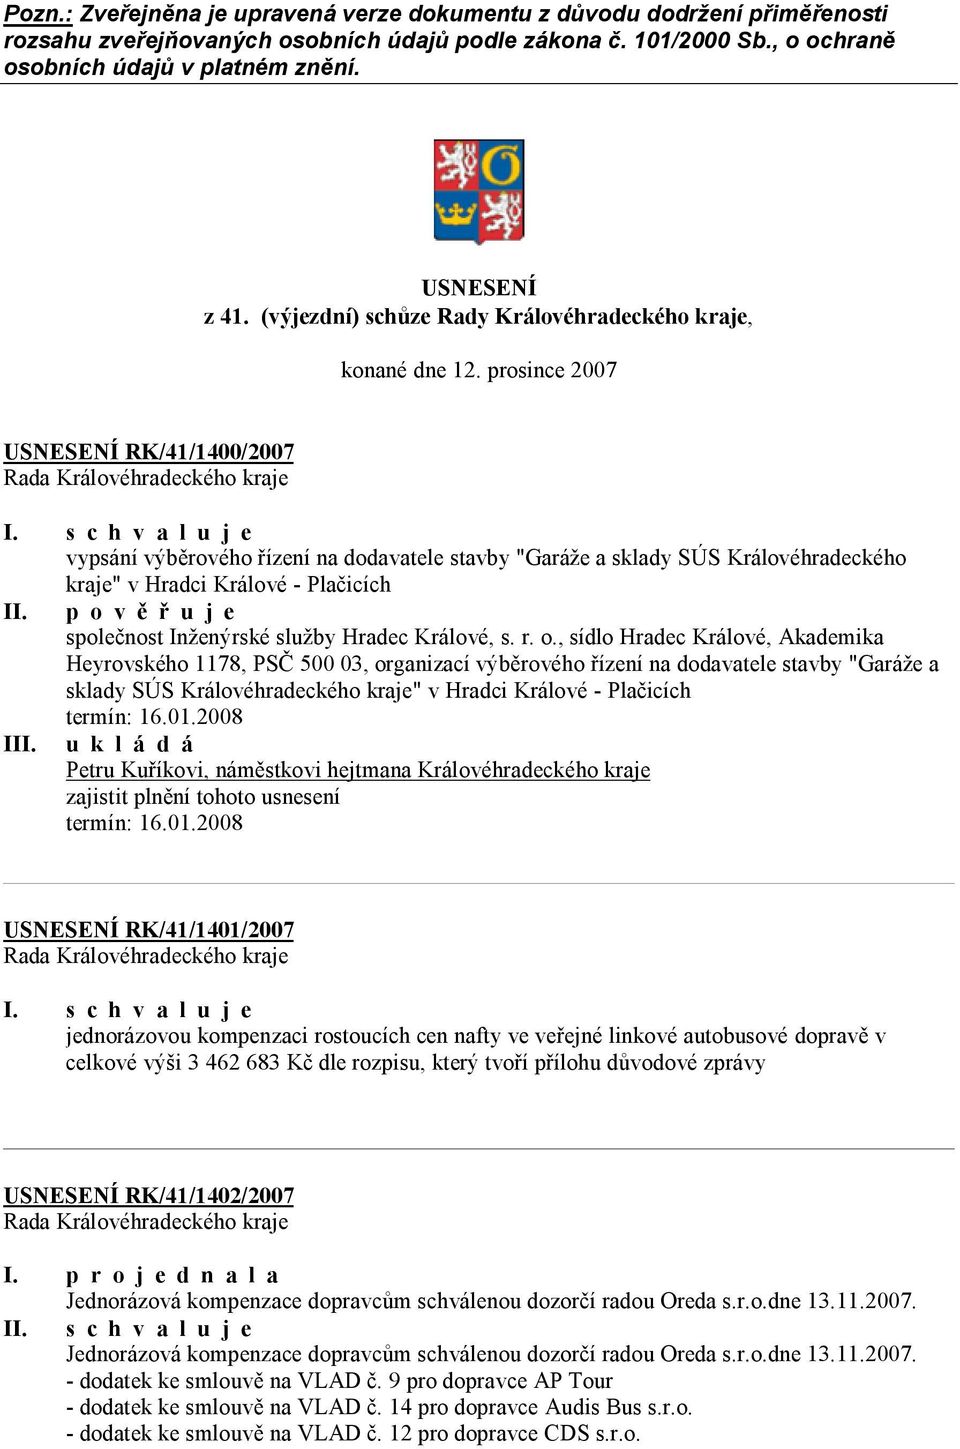 prosince 2007 USNESENÍ RK/41/1400/2007 vypsání výběrového řízení na dodavatele stavby "Garáže a sklady SÚS Královéhradeckého kraje" v Hradci Králové - Plačicích II.